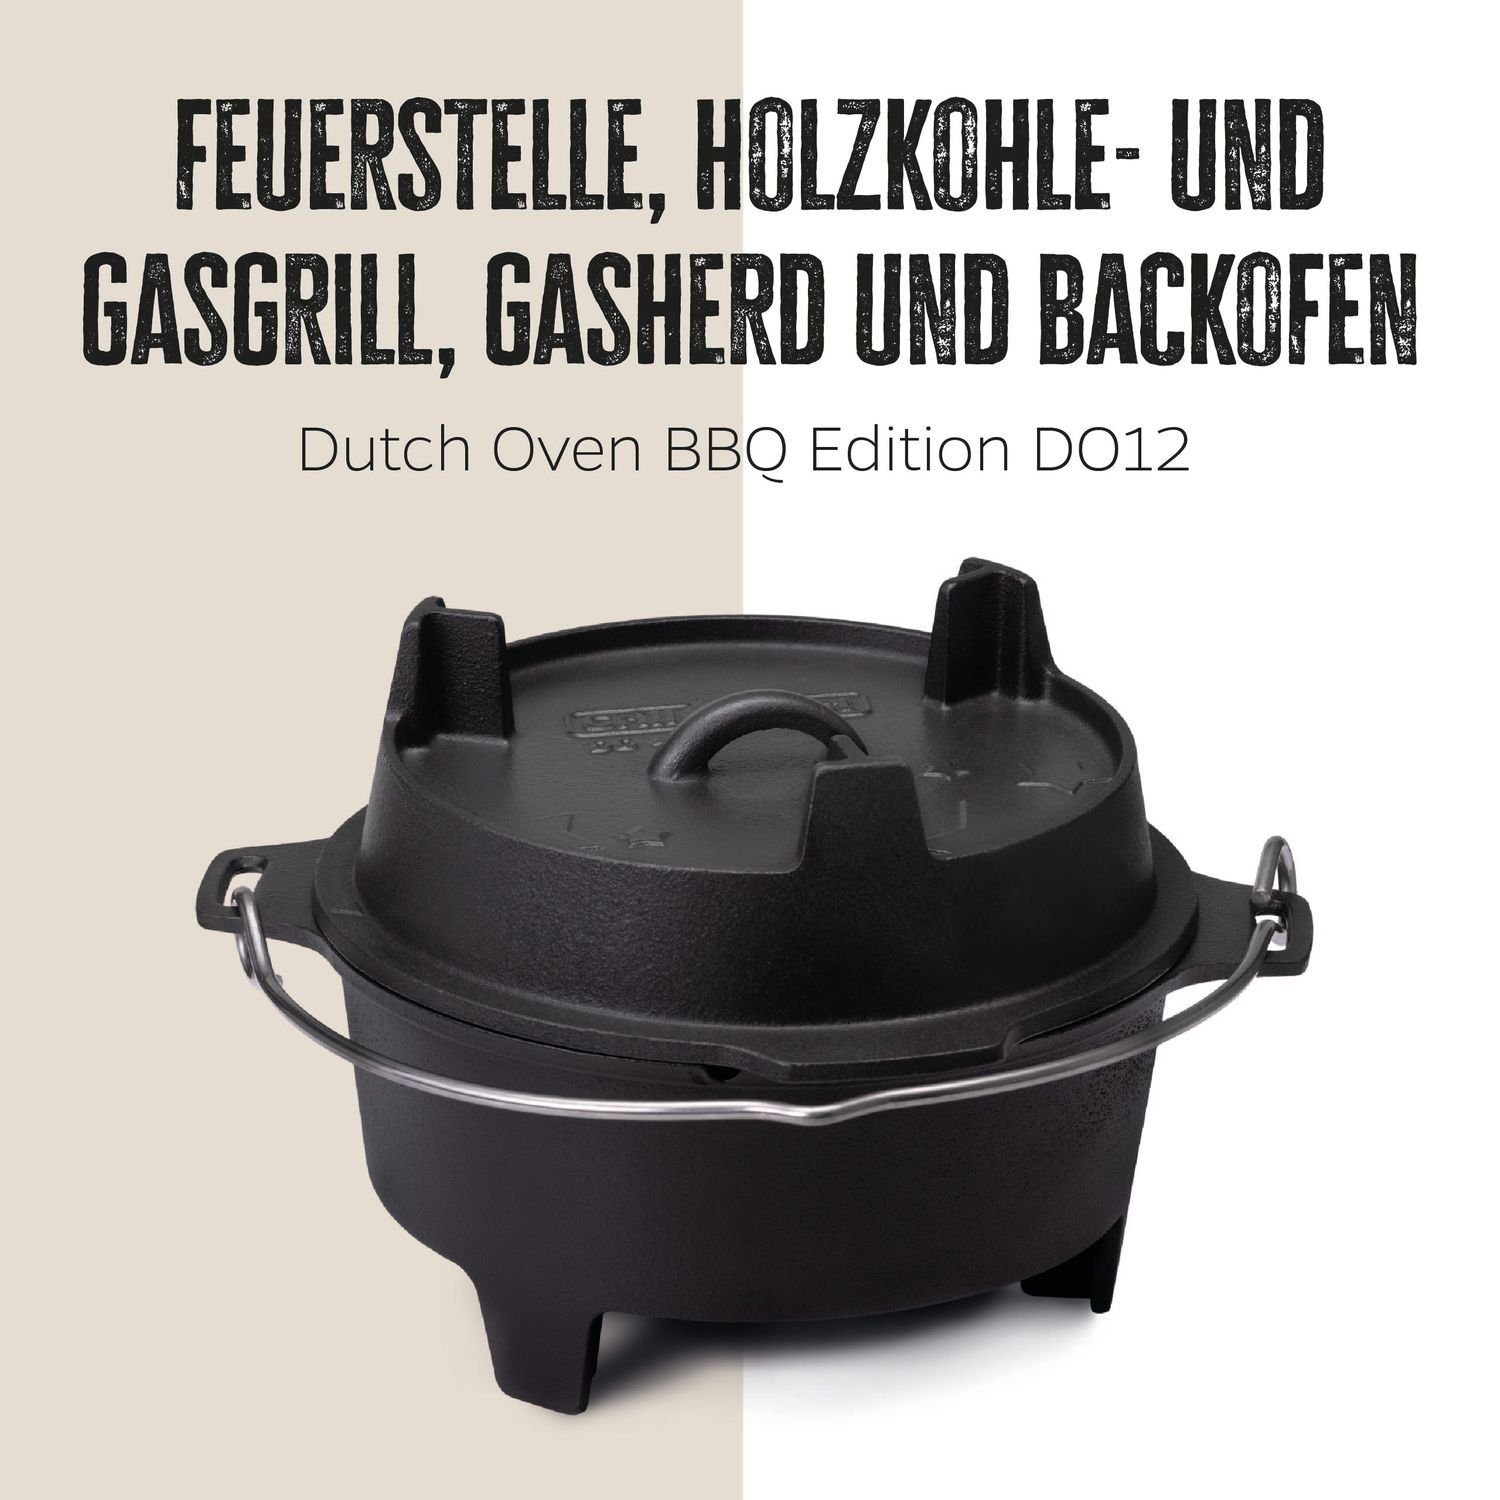 Grillfürst Bratentopf Grillfürst Dutch Oven Edition BBQ DO12